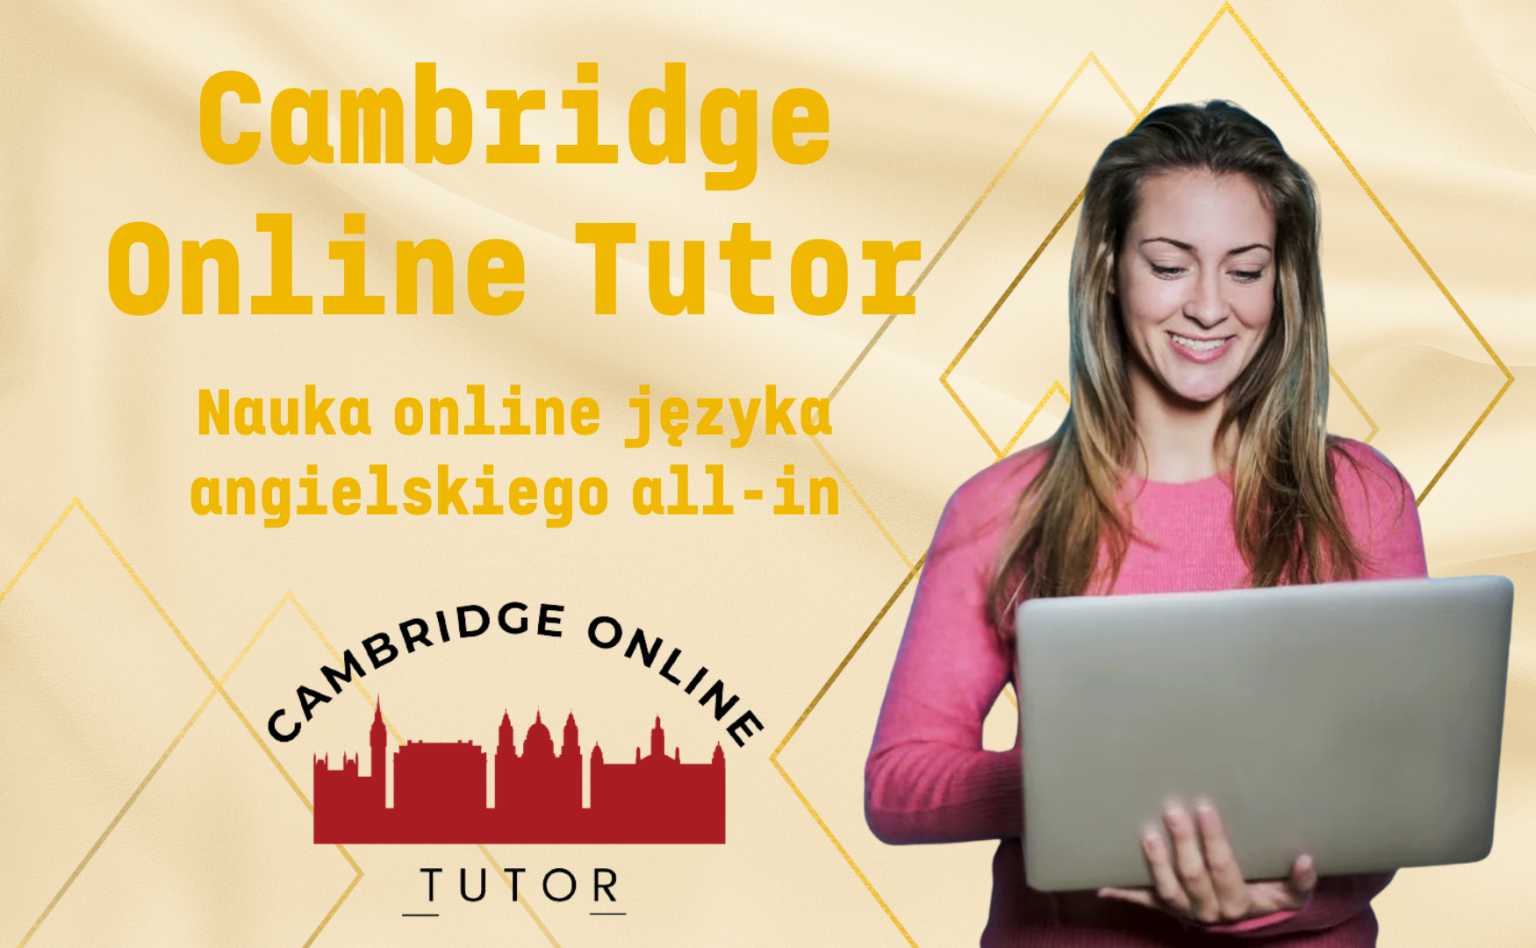 Nauka języka angielskiego online dla dzieci, młodzieży, dorosłych, szkół i firm - platforma edukacyjna Cambridge Online Tutor